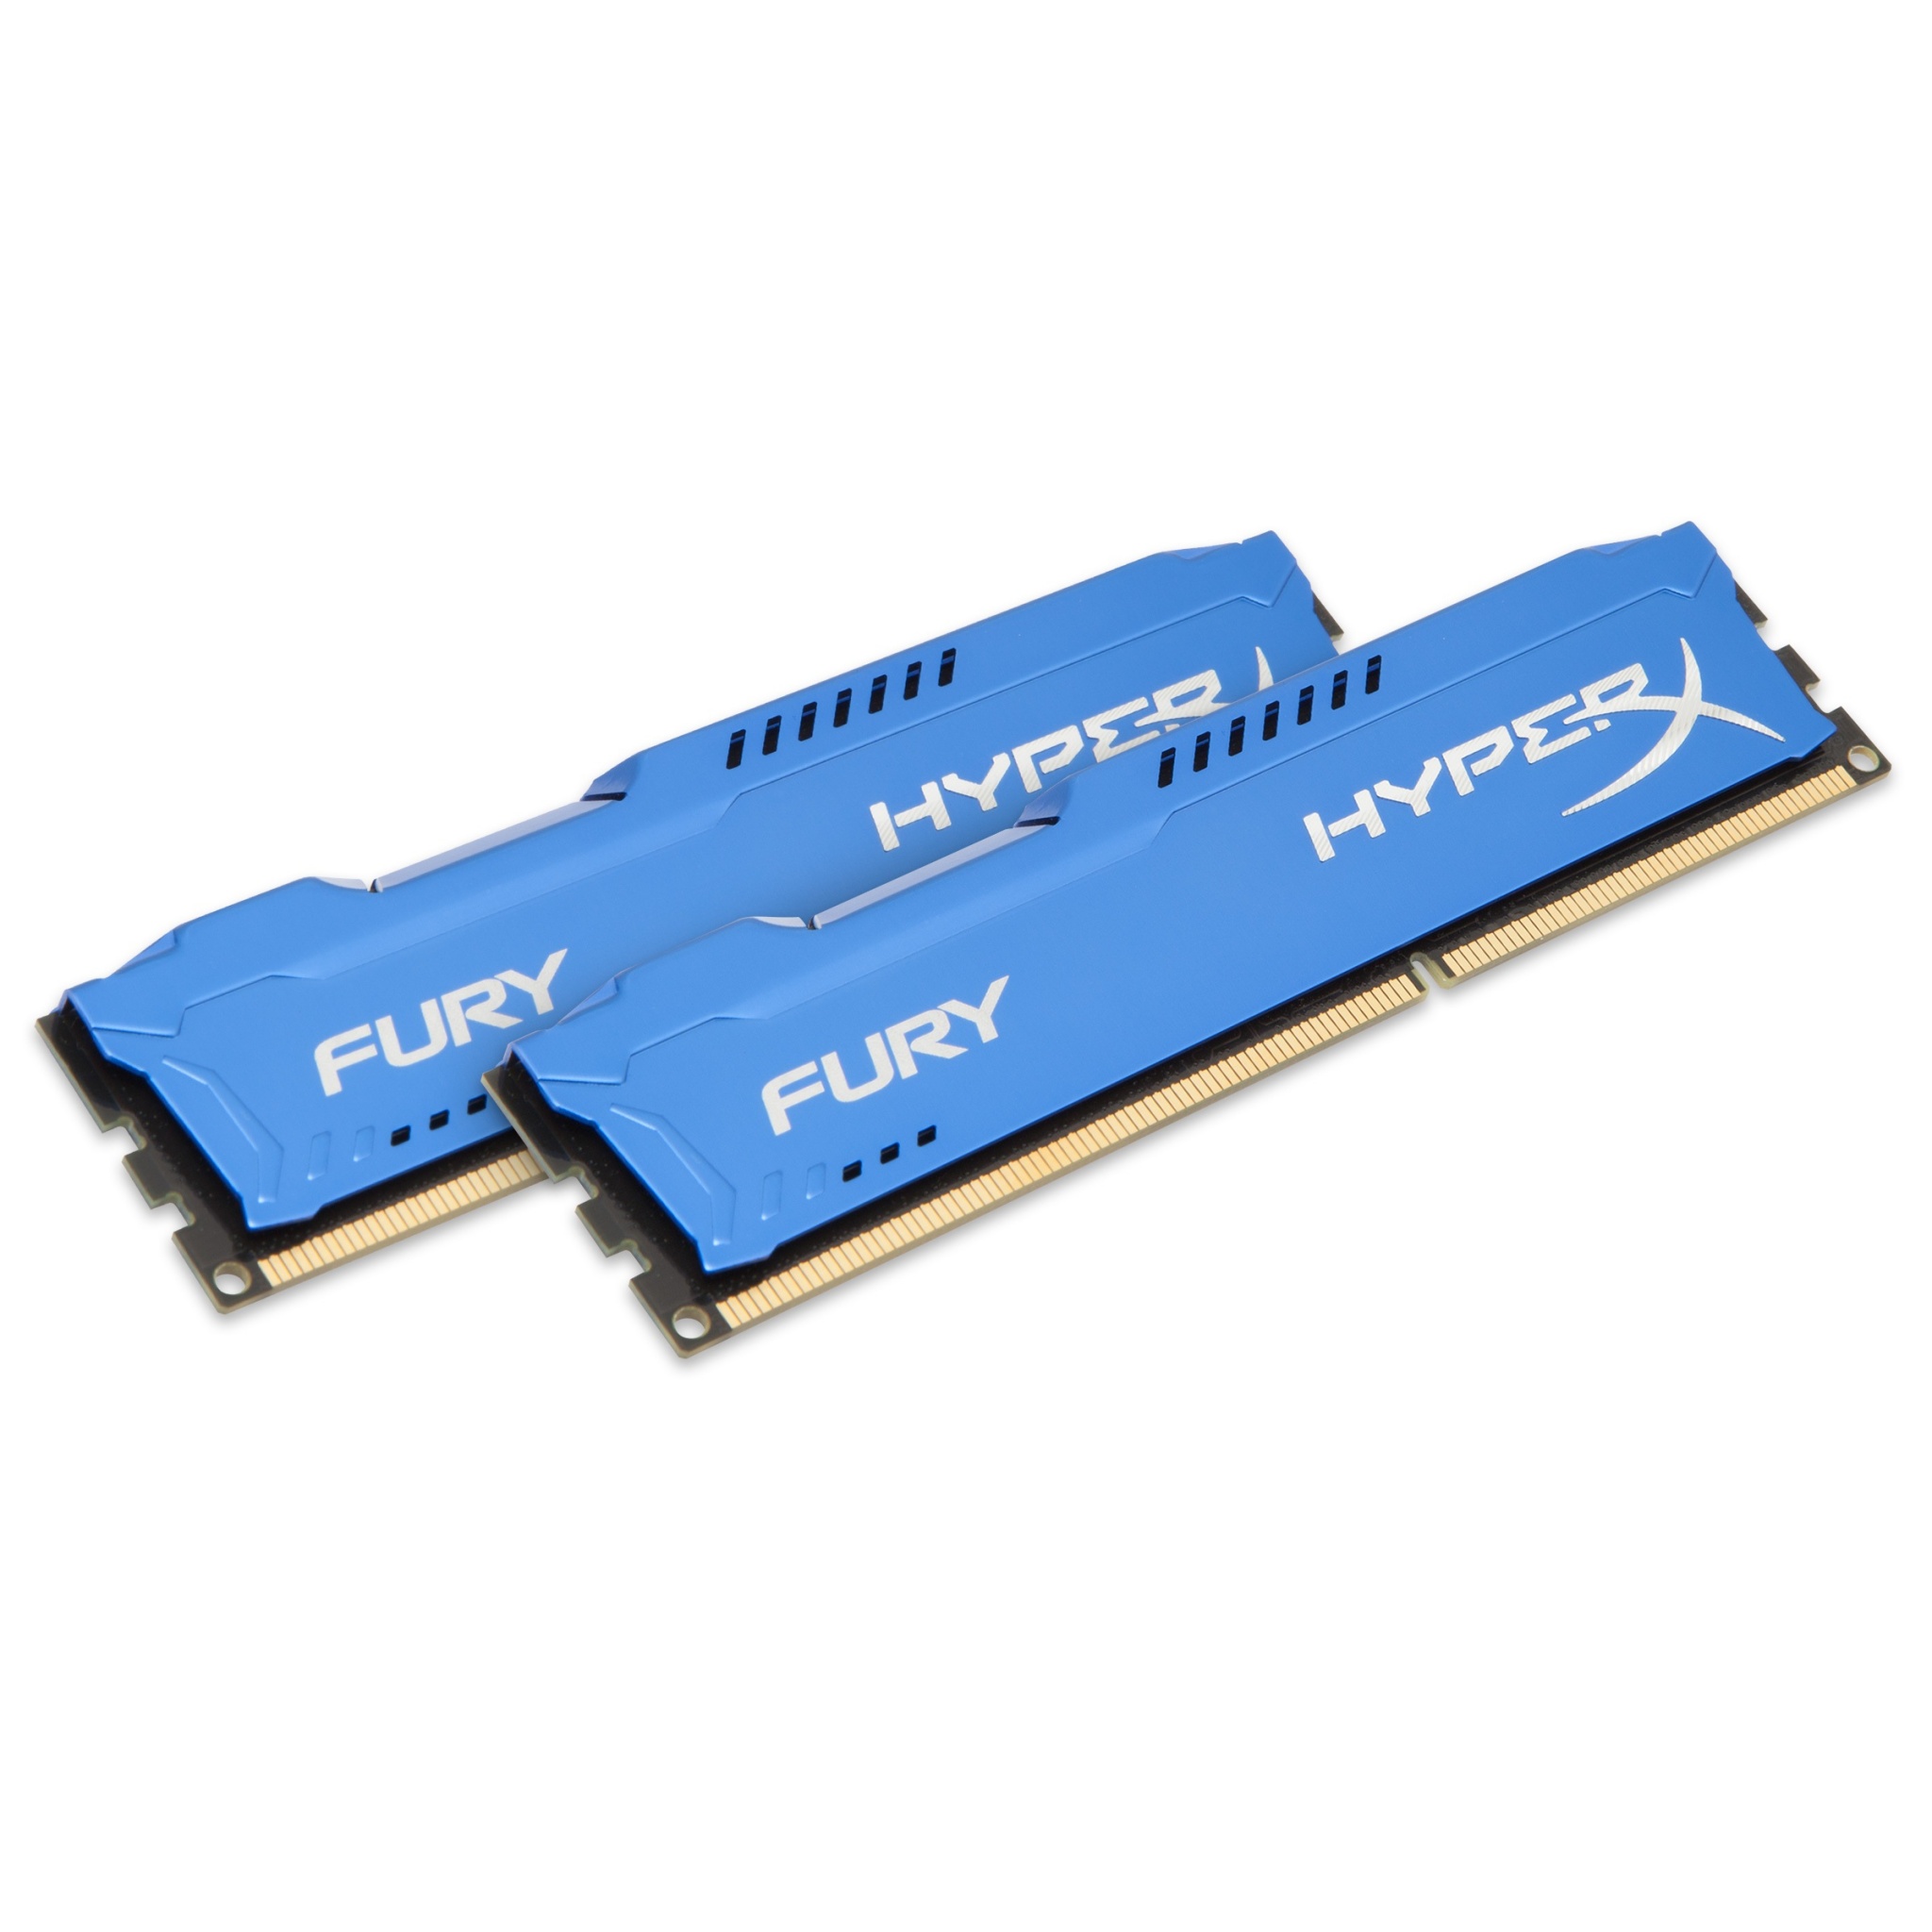 8GB Kingston HyperX Fury DDR3 1866MHz CL10 Channel (2x -